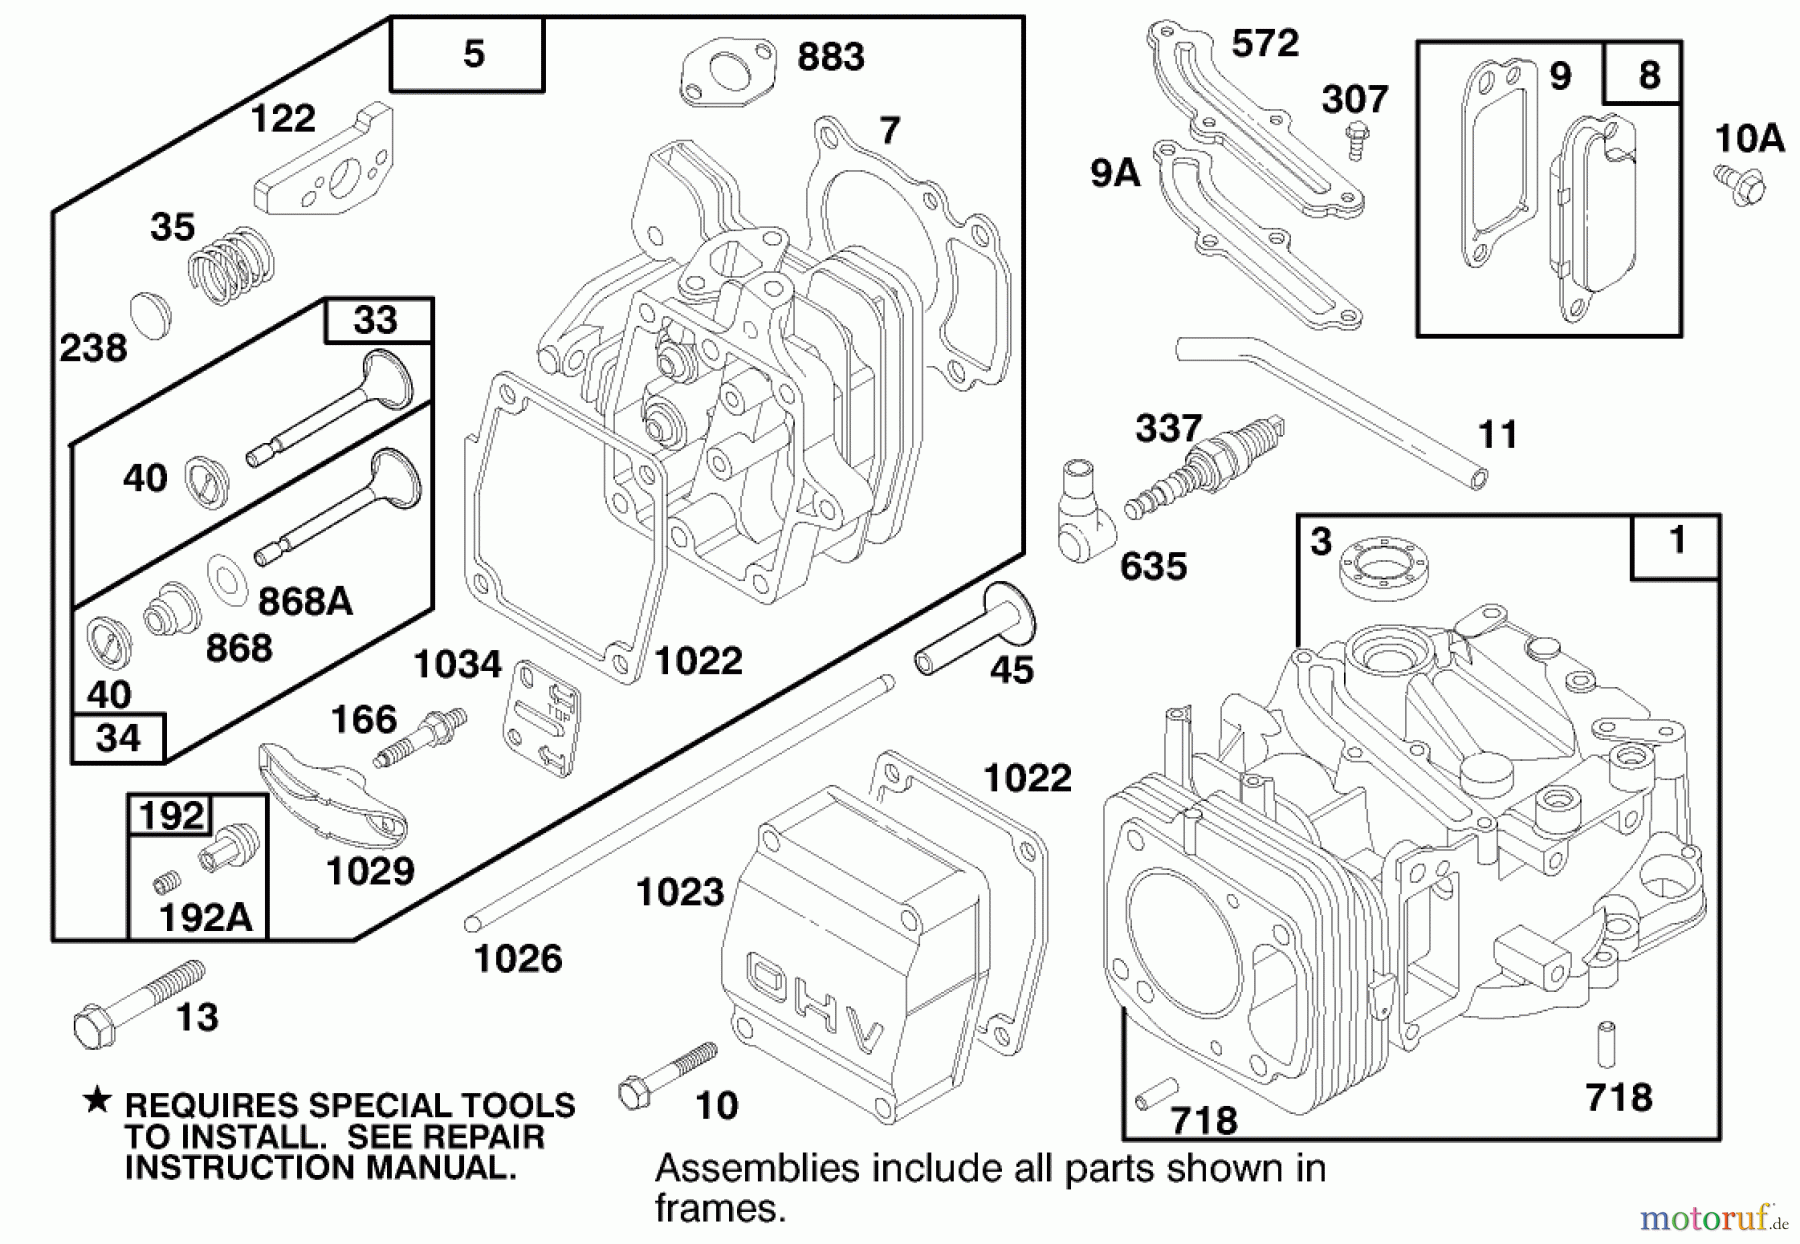  Toro Neu Mowers, Walk-Behind Seite 2 22140 - Toro Recycler Mower, 1997 (790000001-799999999) ENGINE GTS 150 #1